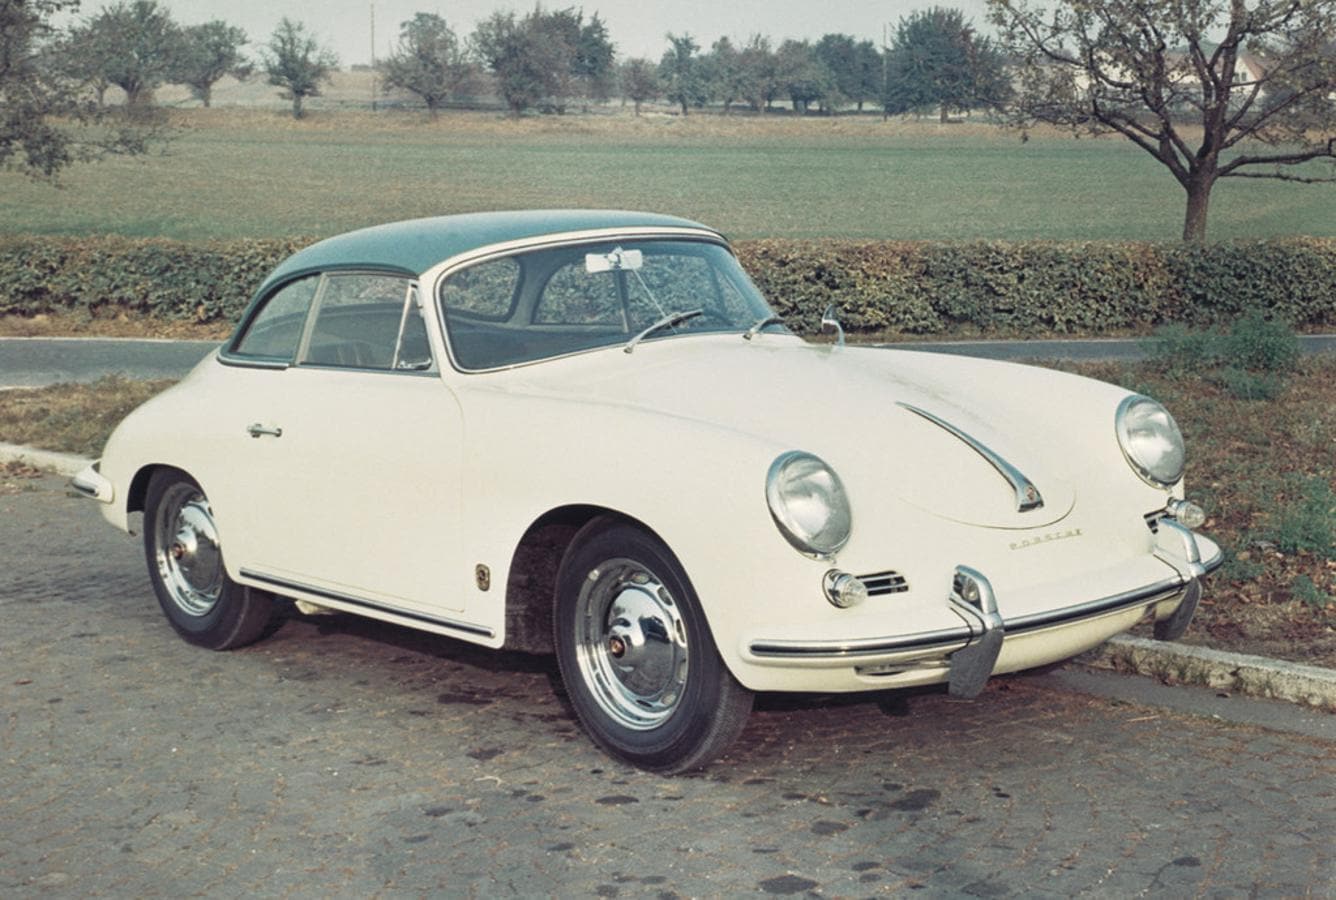 Porsche 911. El primero modelo fue bautizado como 901 pero tuvieron que cambiar el nombre comercial por un litigio judicial con Peugeot, finalmente se optó por la denominación 911